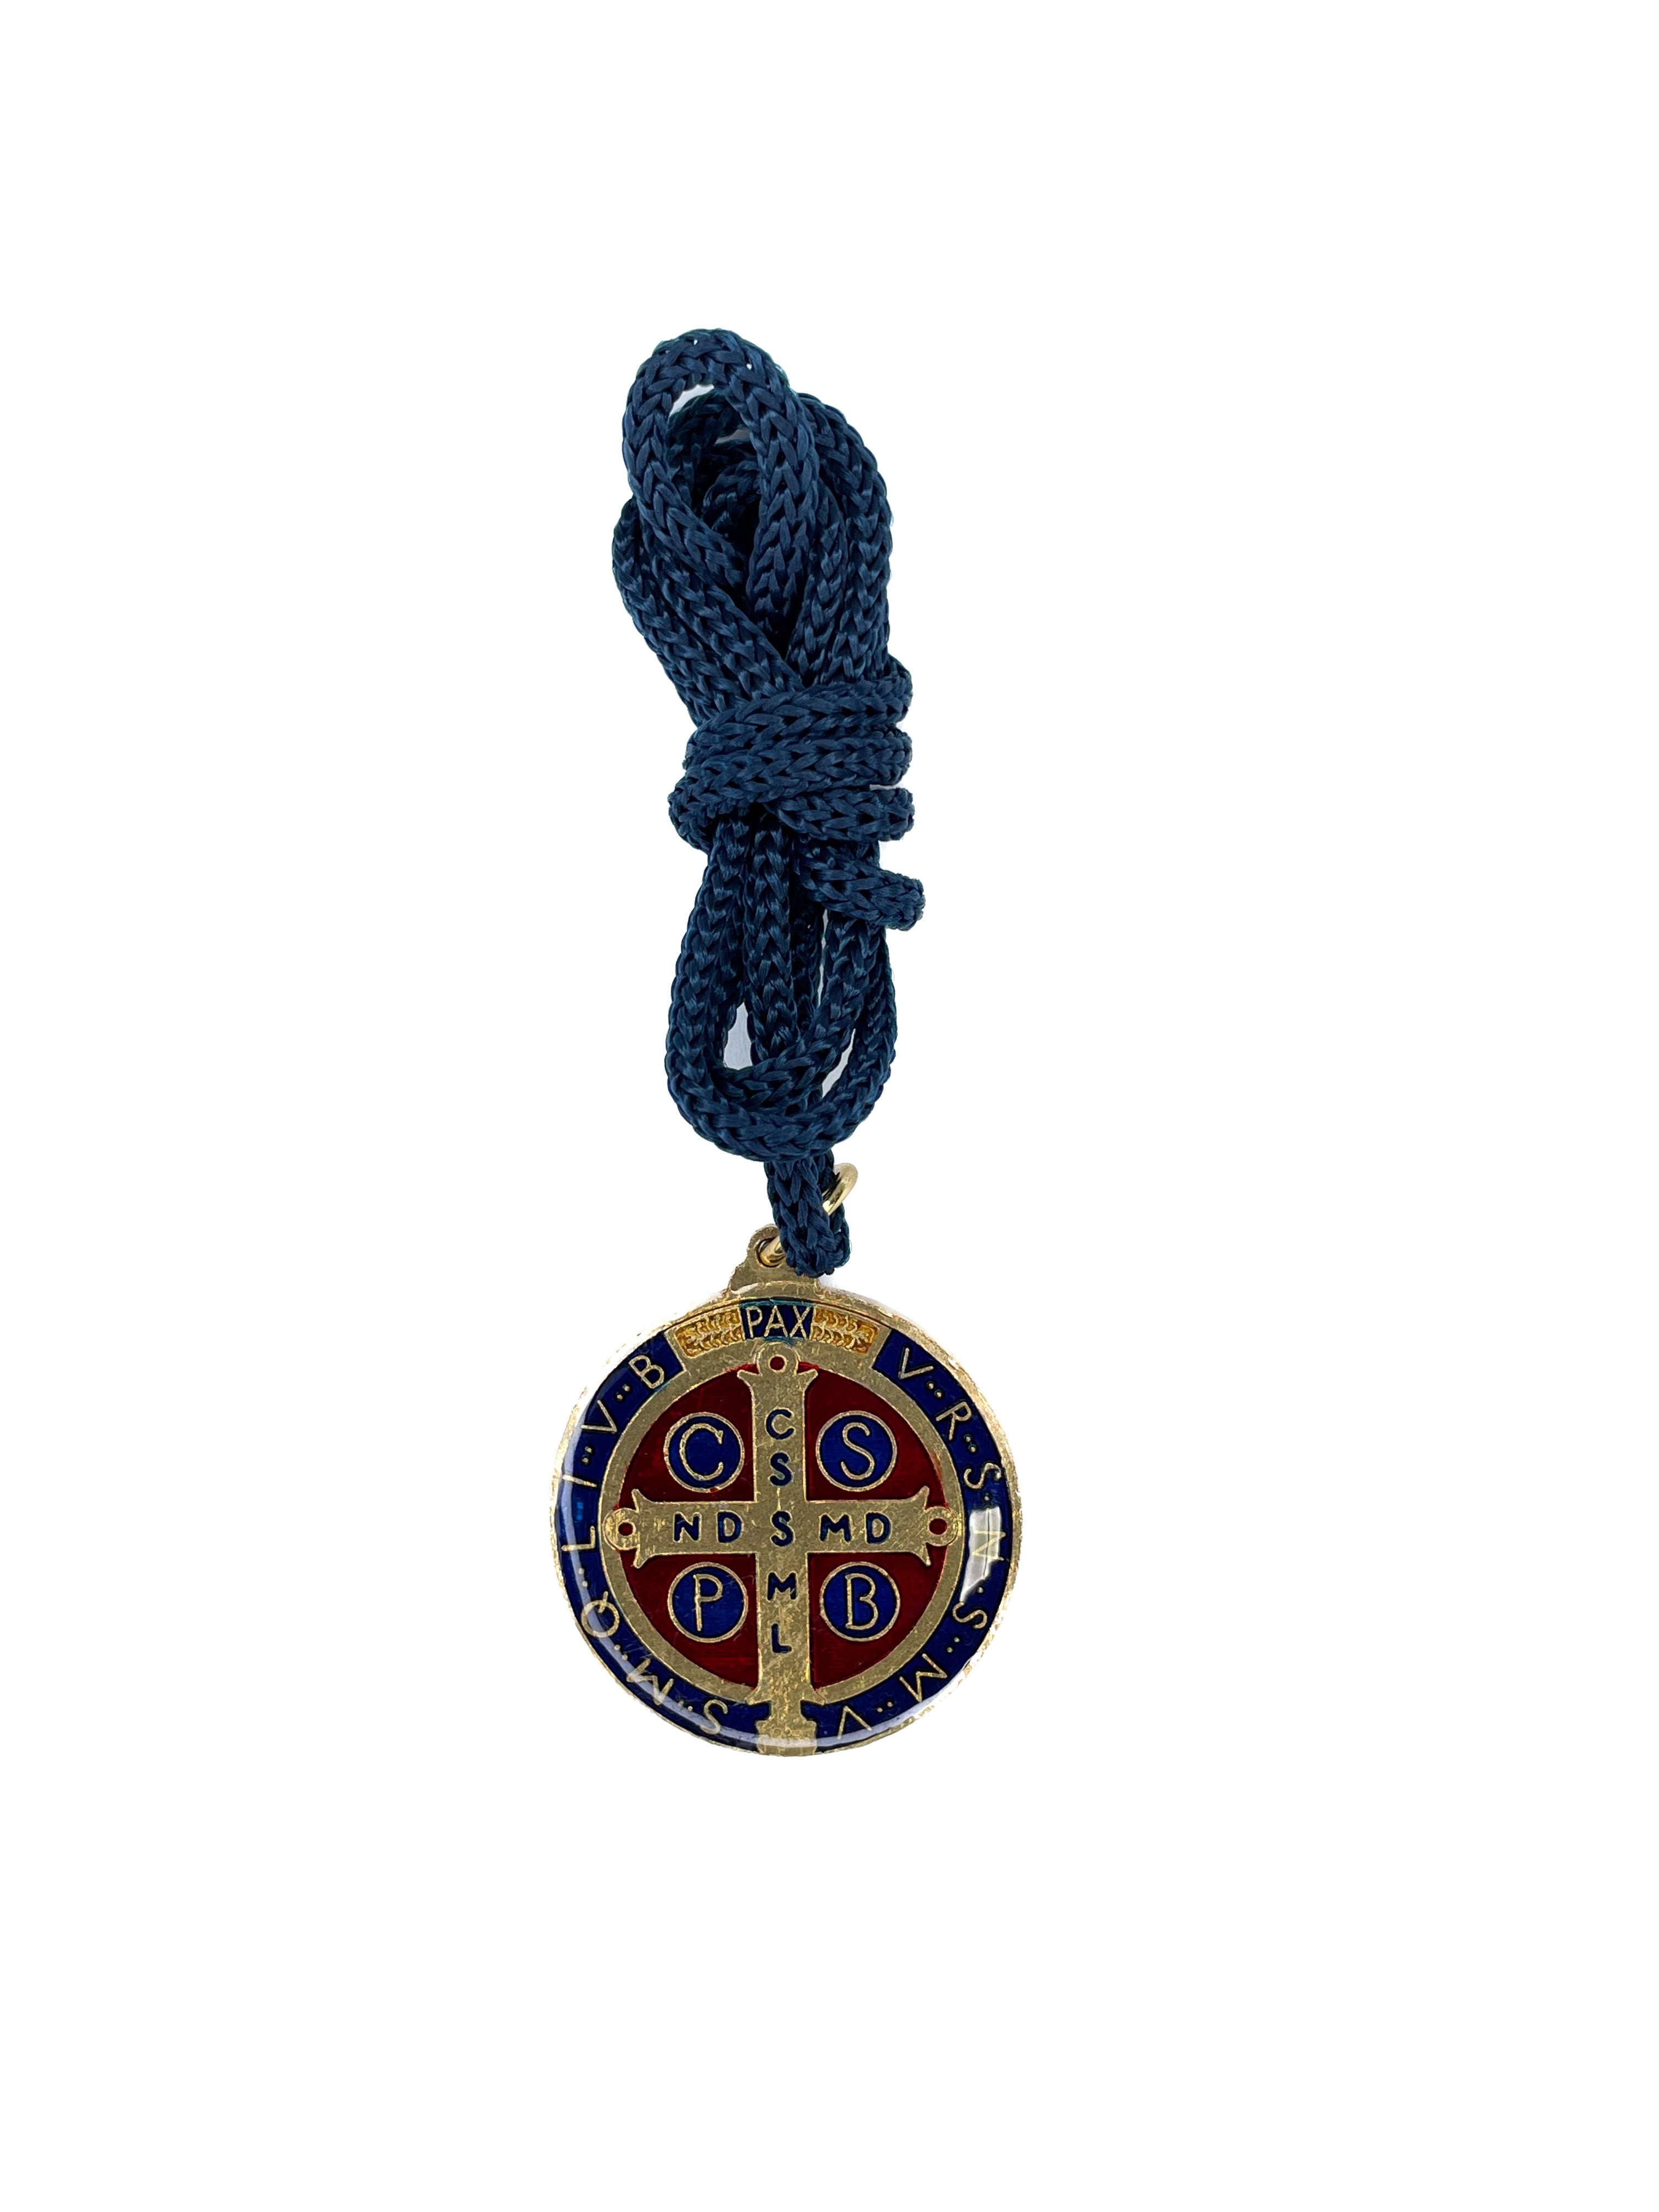 Medalha de São Bento